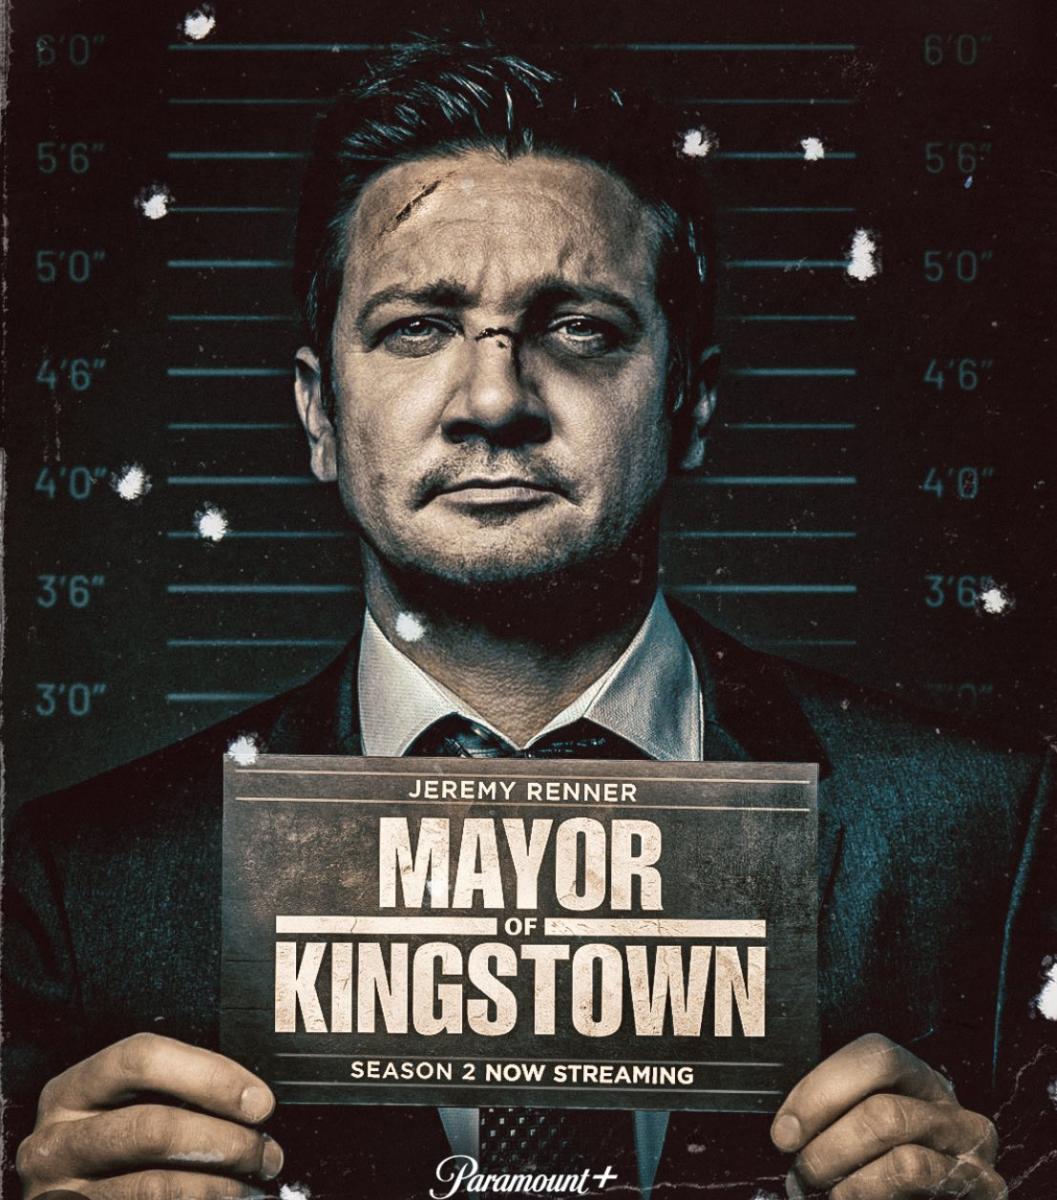 مسلسل Mayor of Kingstown .. هل يكون هناك موسم ثالث؟